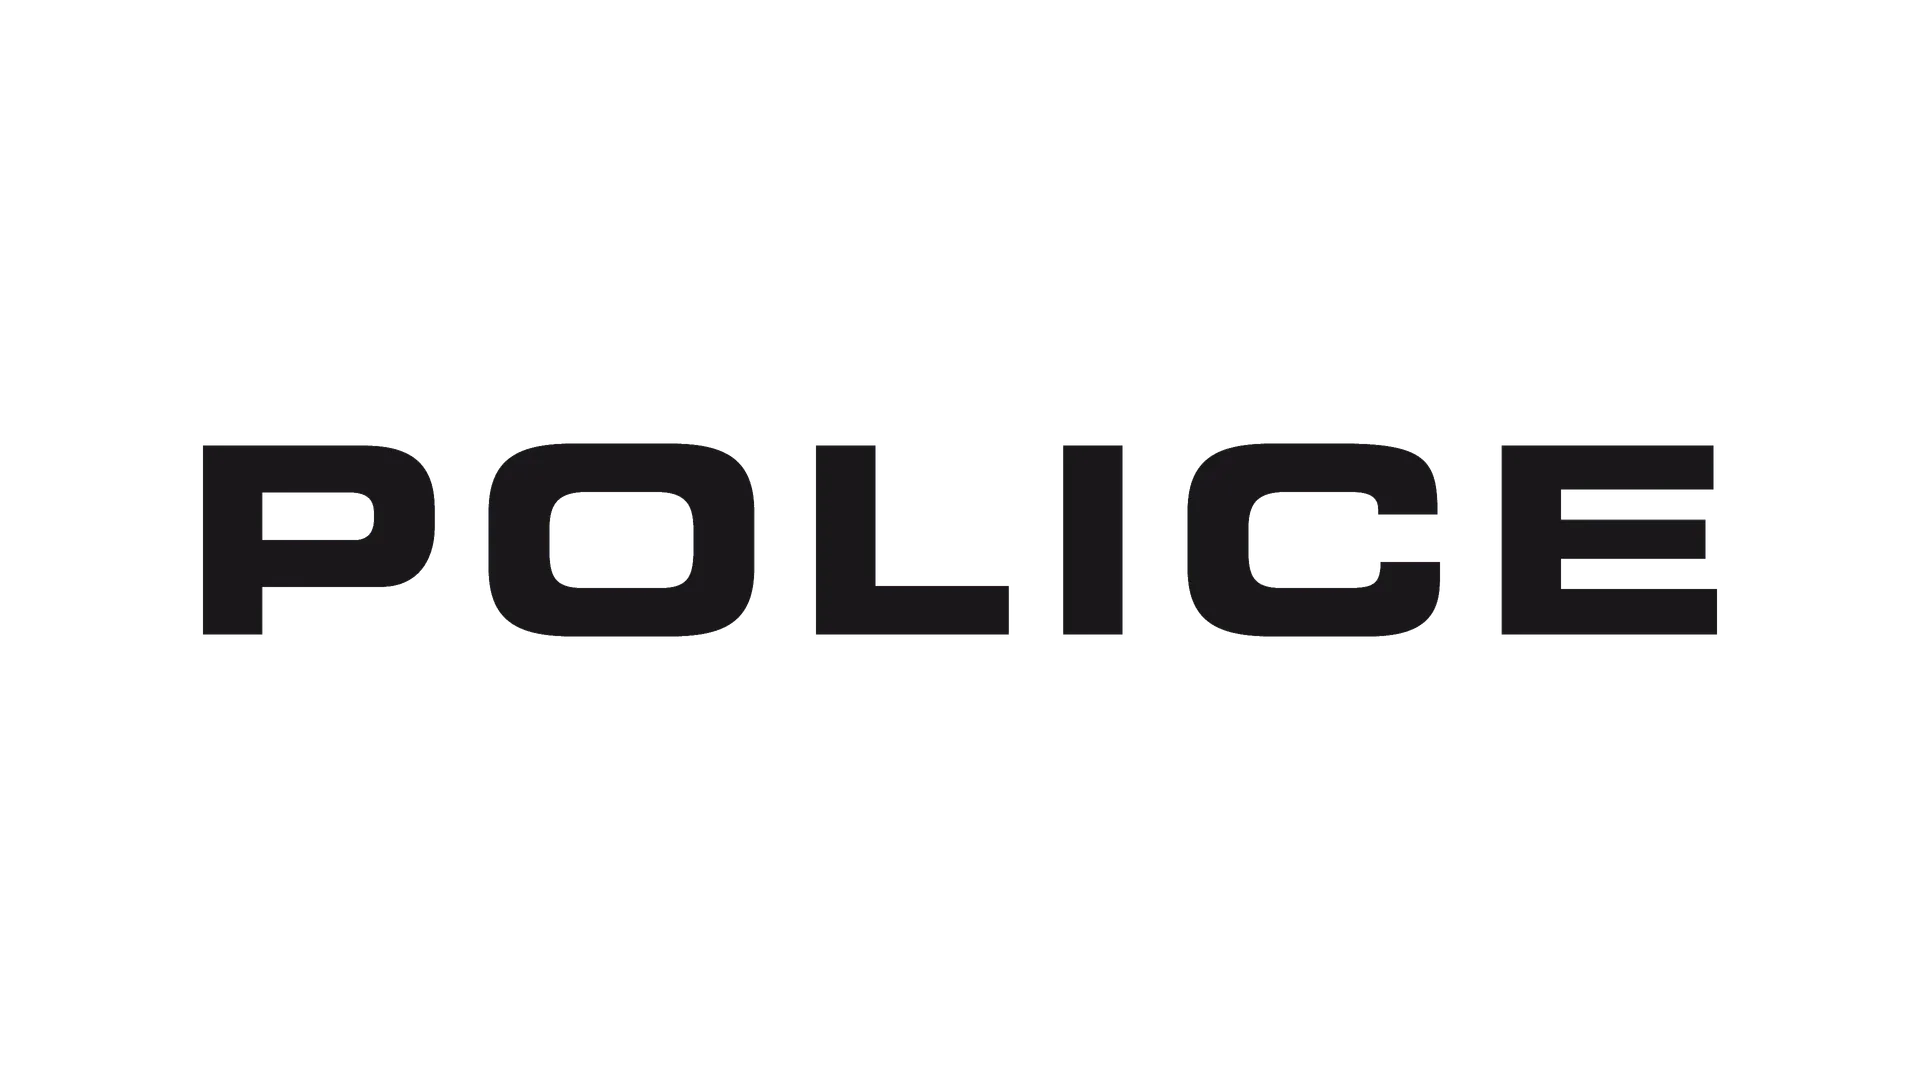 POLICE logo